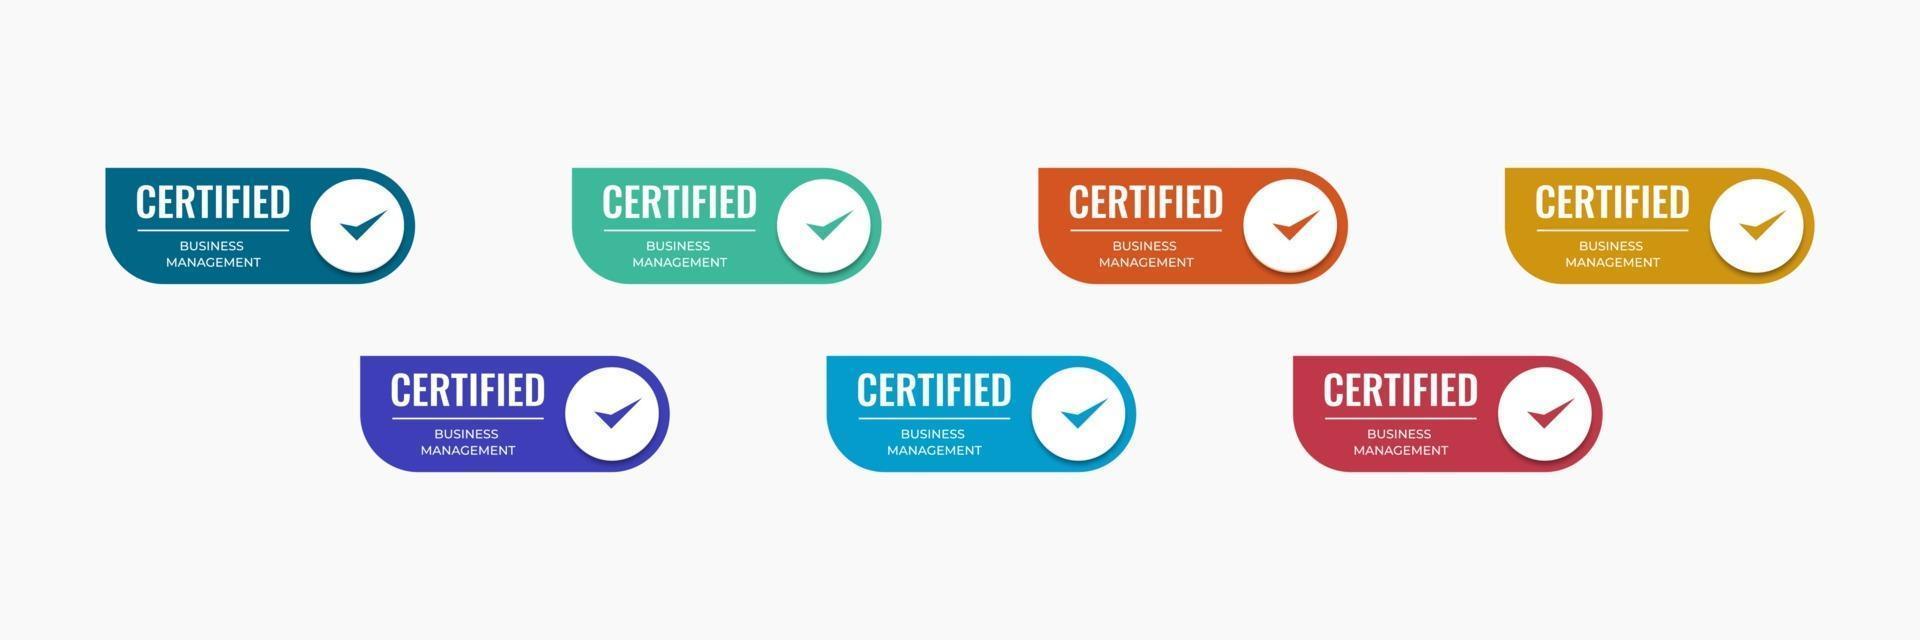 modelo de crachá de ícone certificado com profissão empresarial da categoria. ilustração em vetor design certificação.